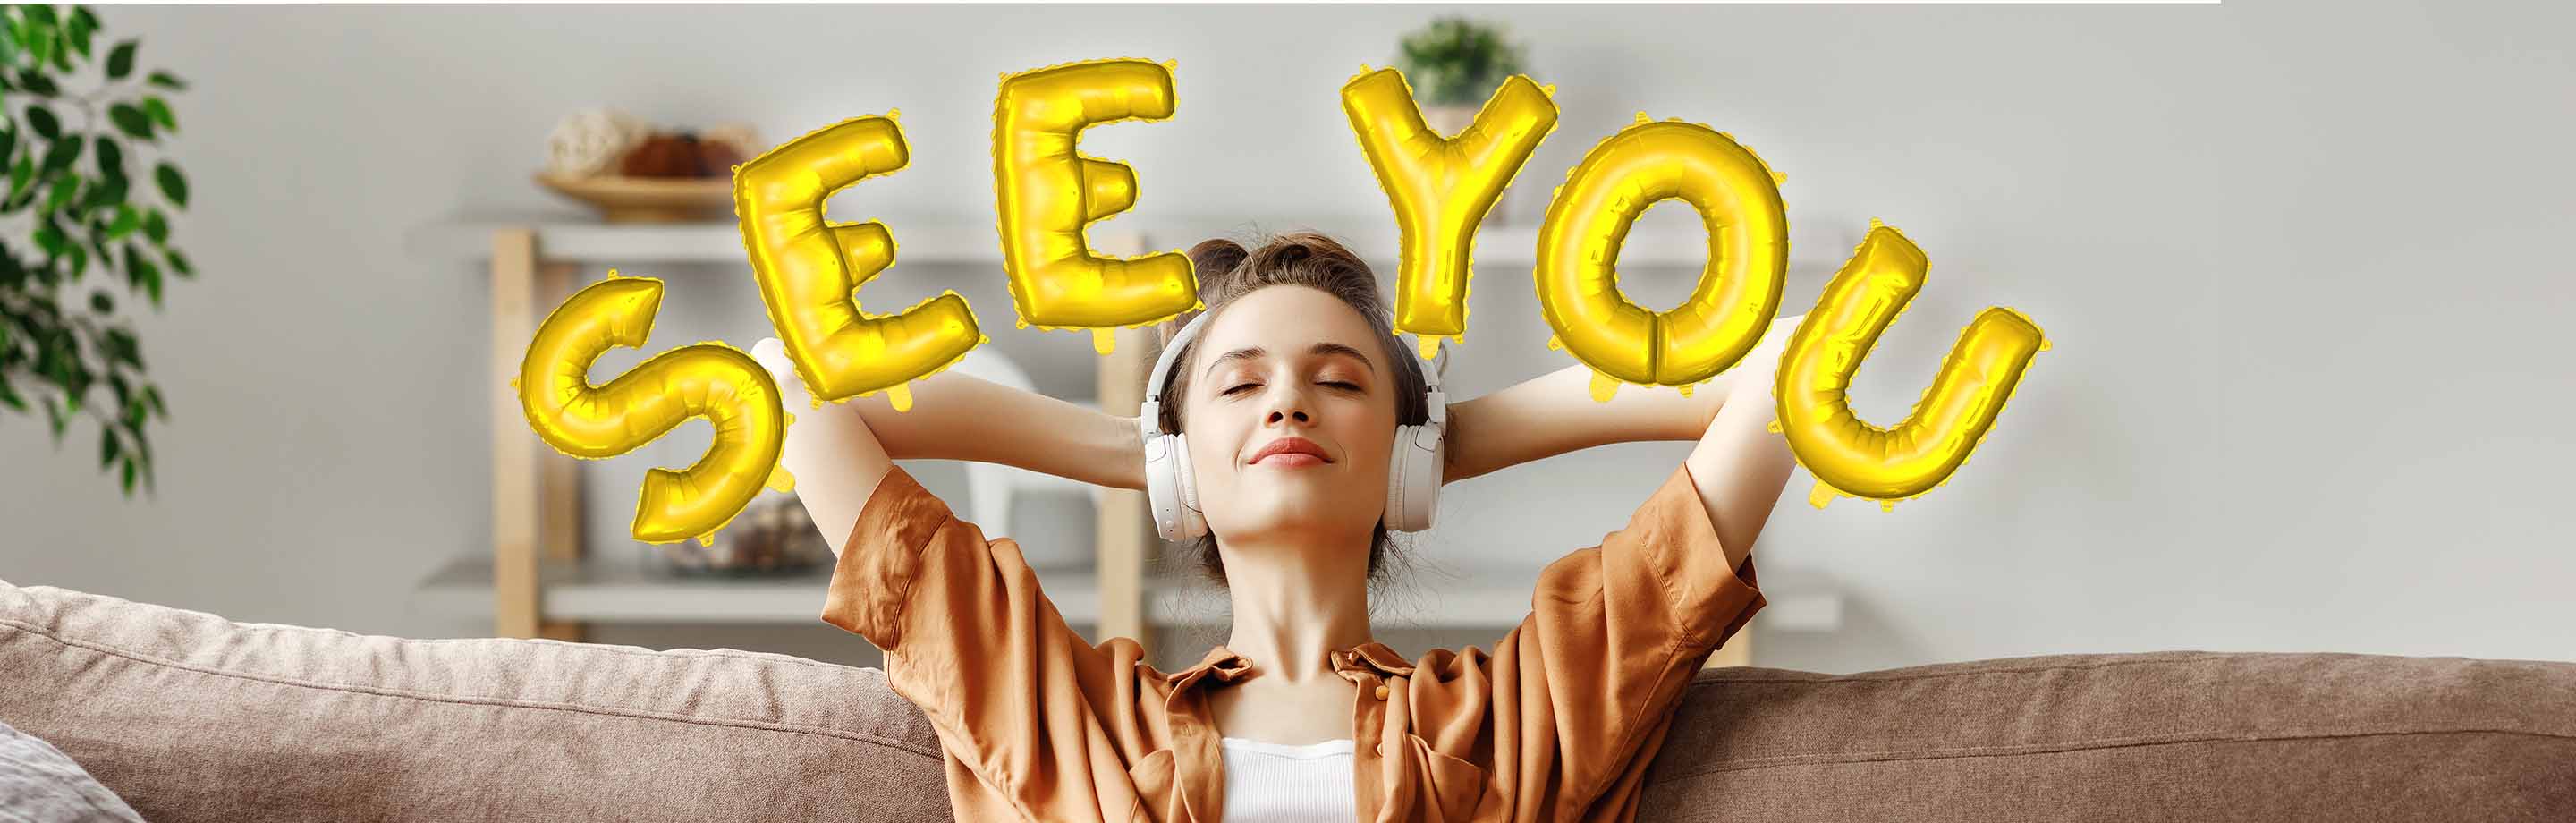 Eine entspannte junge Frau mit Händen hinter dem Kopf und mit Kopfhörern auf einem Sofa. Um ihren Kopf herum befindet sich der Schriftzug „See you“ in Form goldener Luftballons.